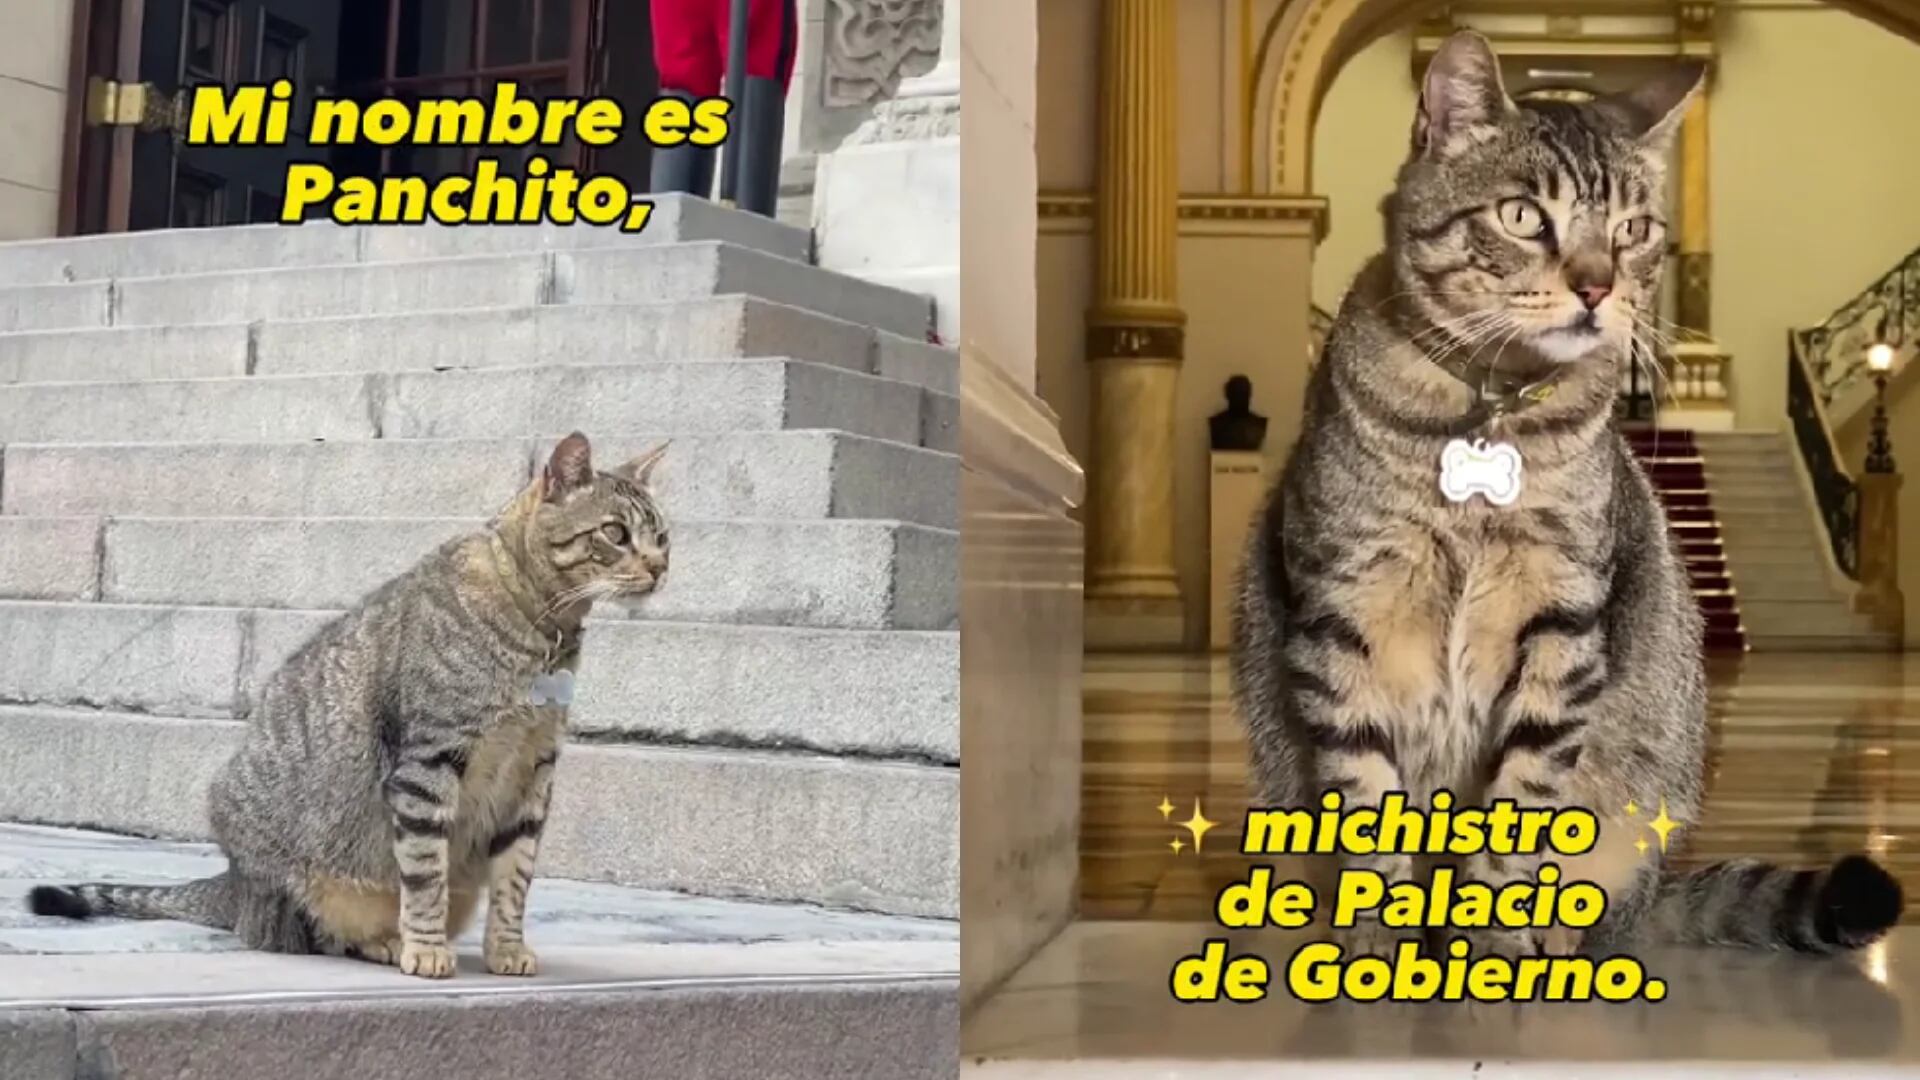 ‘Panchito’, la mascota de Palacio de Gobierno que enamoró a TikTok: “Soy el nuevo michistro”